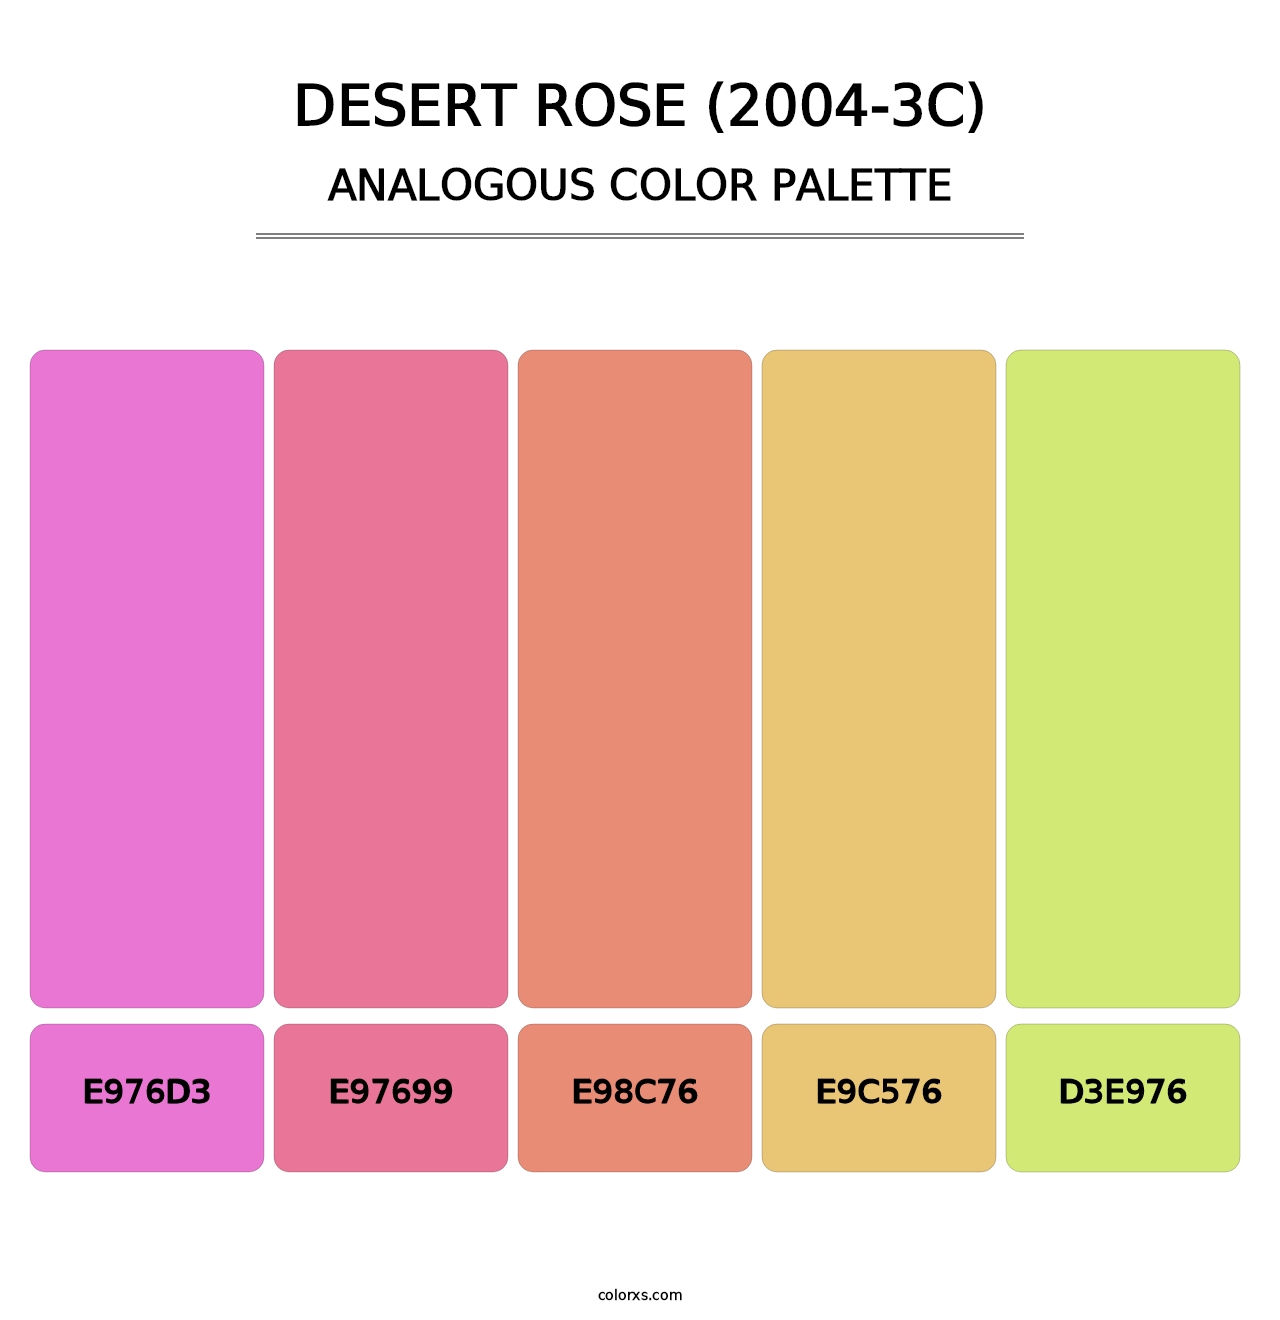 Desert Rose (2004-3C) - Analogous Color Palette